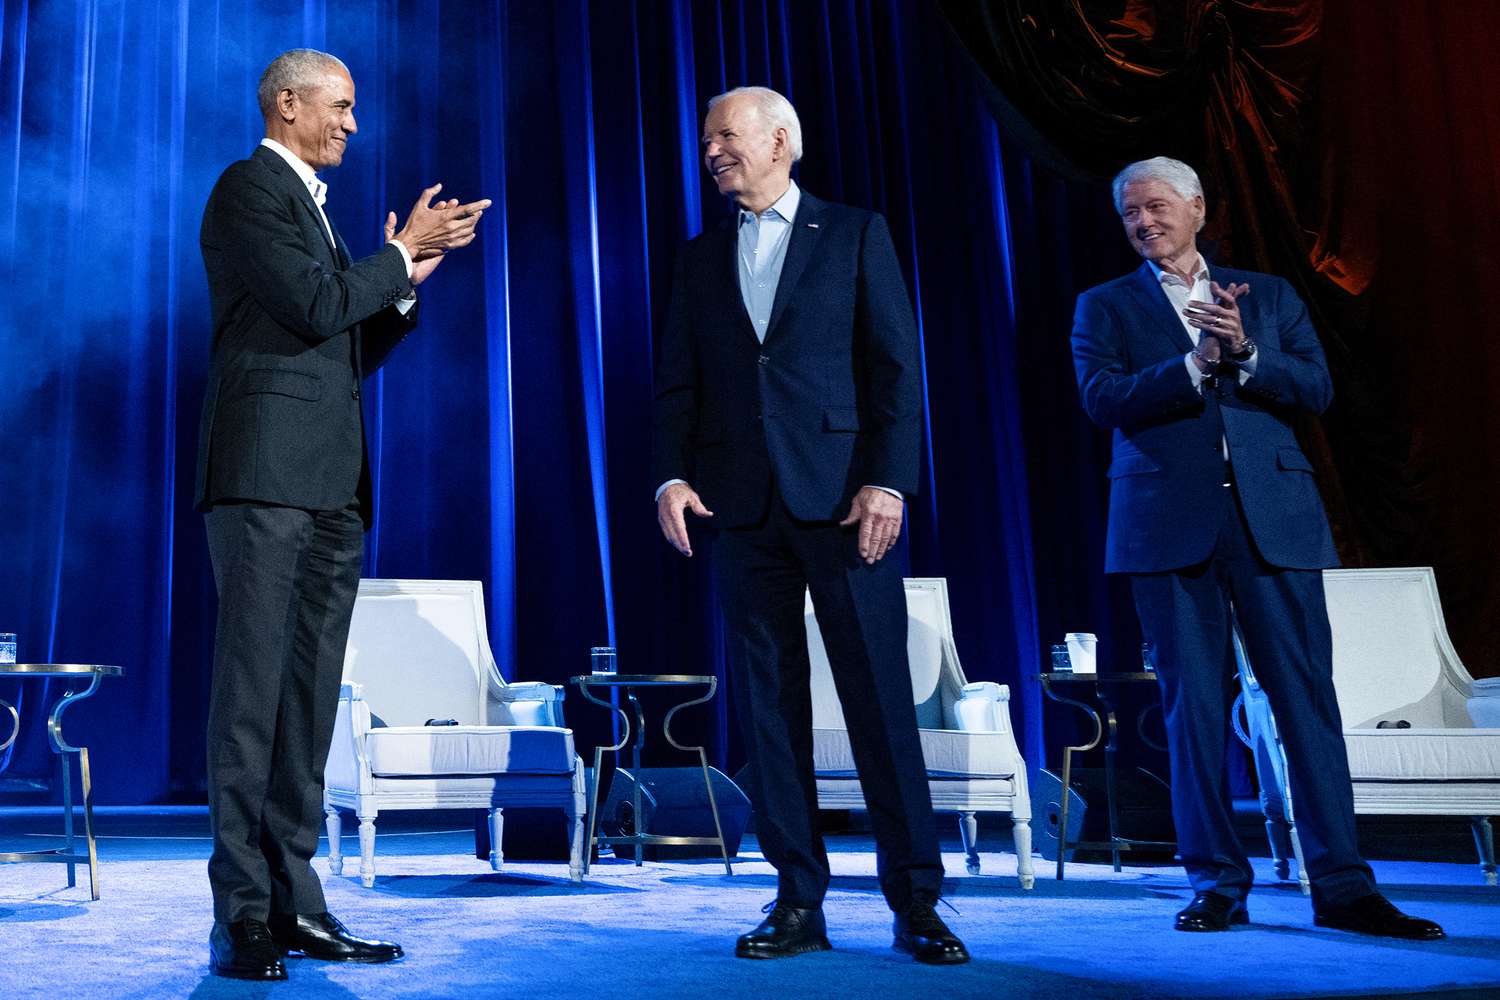 Former US President Barack Obama (L) and former US President Bill Clinton (R) clap for US President Joe Biden